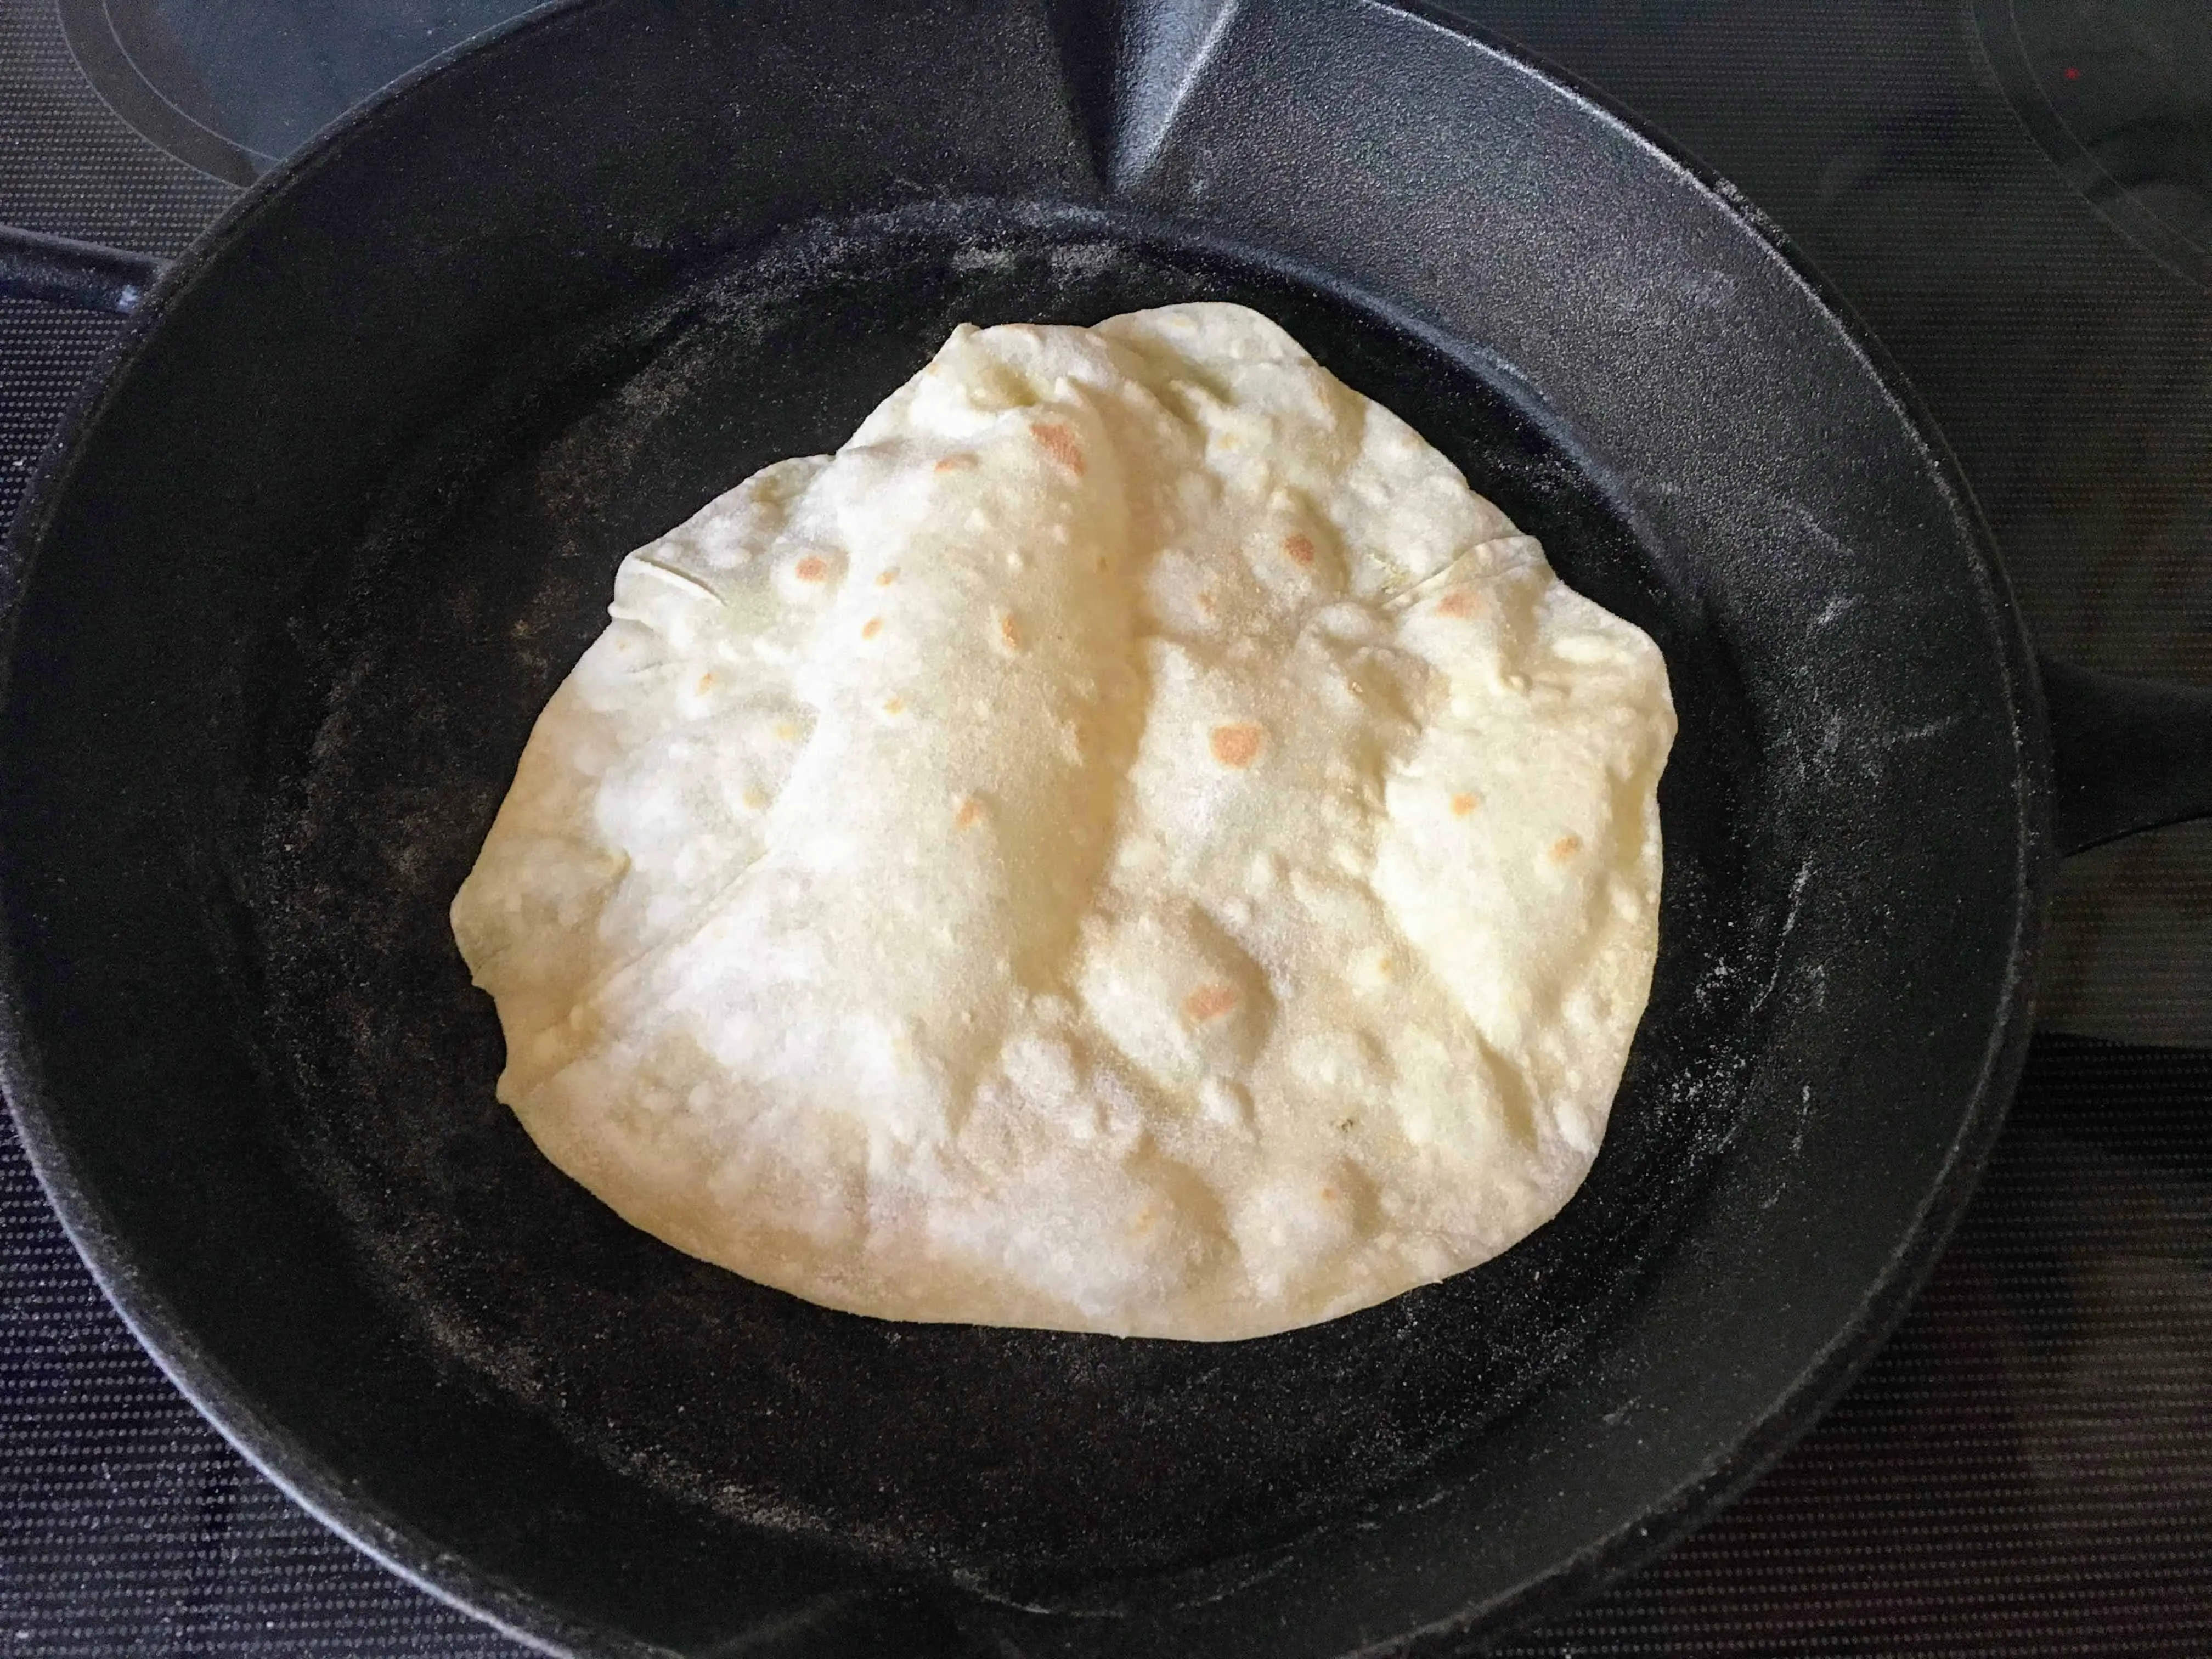 https://www.vintagekitchenvixen.com/wp-content/uploads/2019/07/cast-iron-skillet-kefir-tortillas.jpg